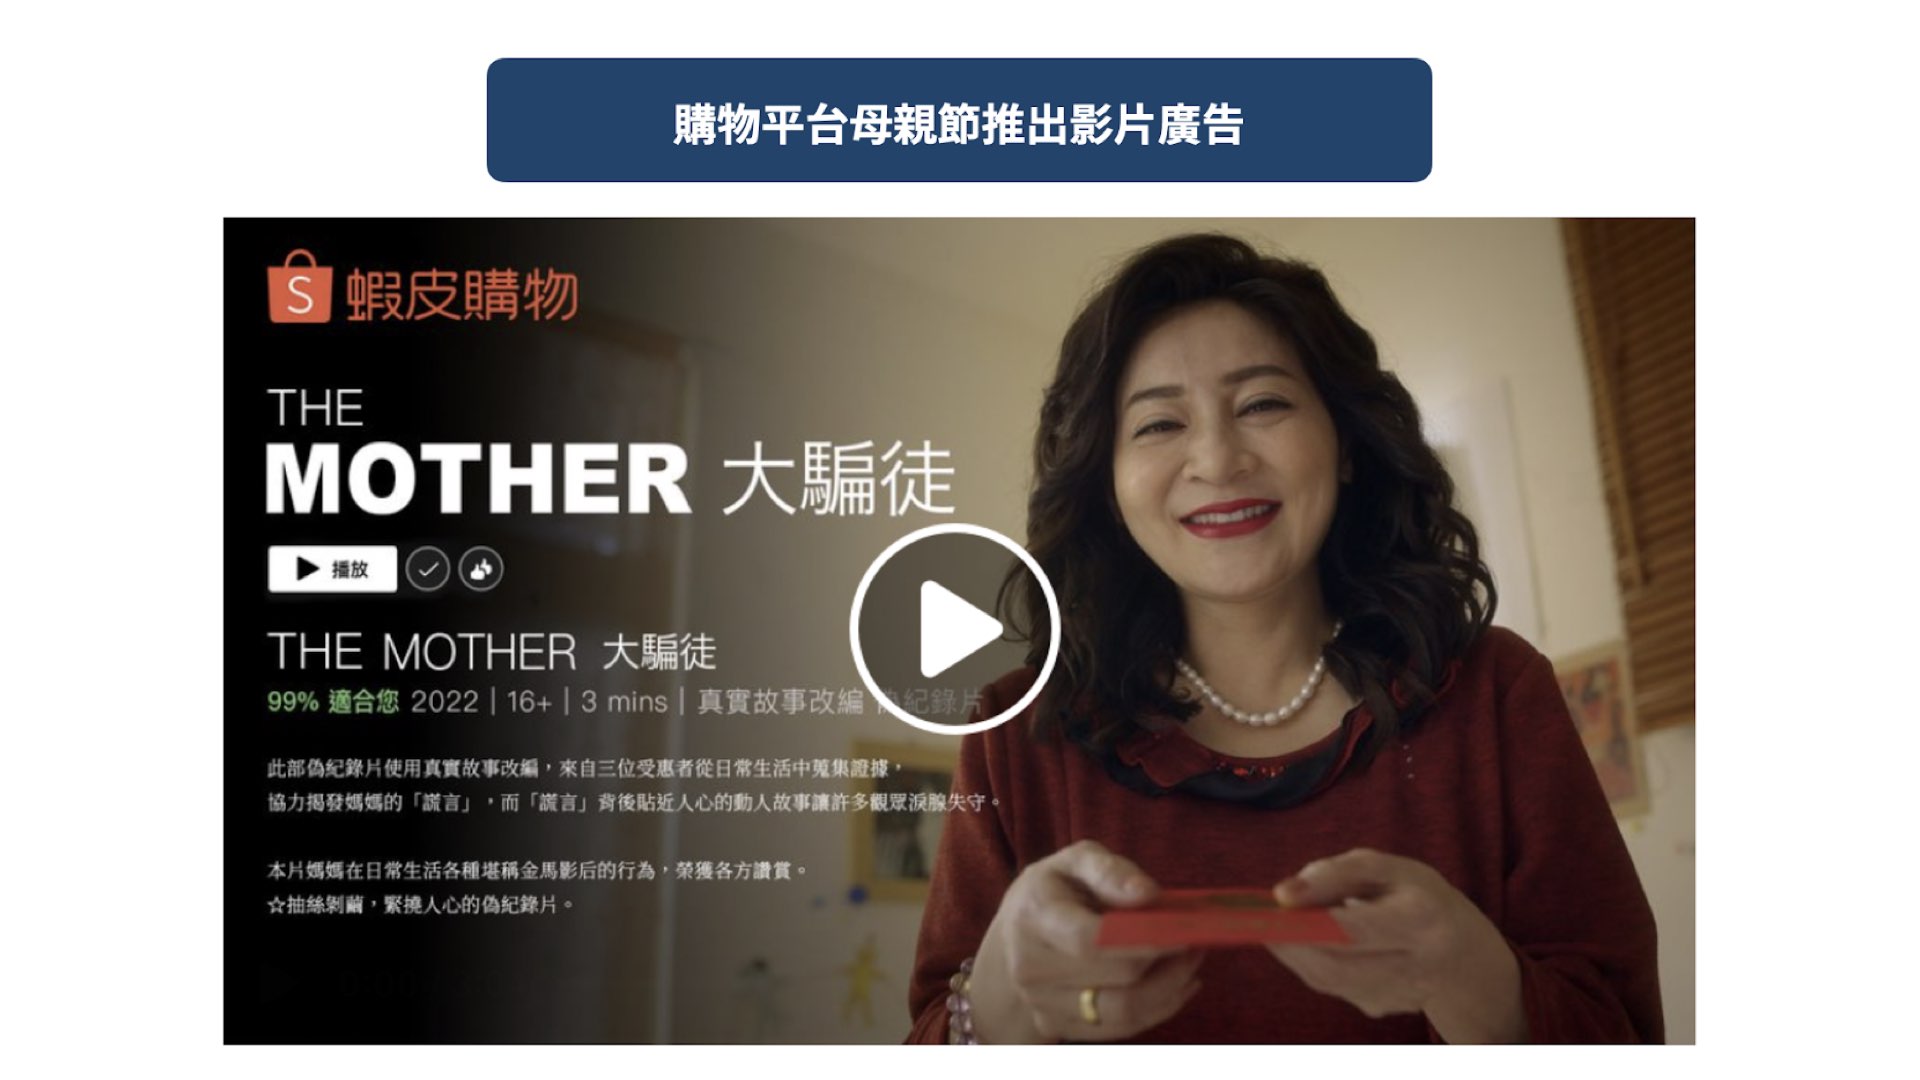 購物平台母親節推出影片廣告